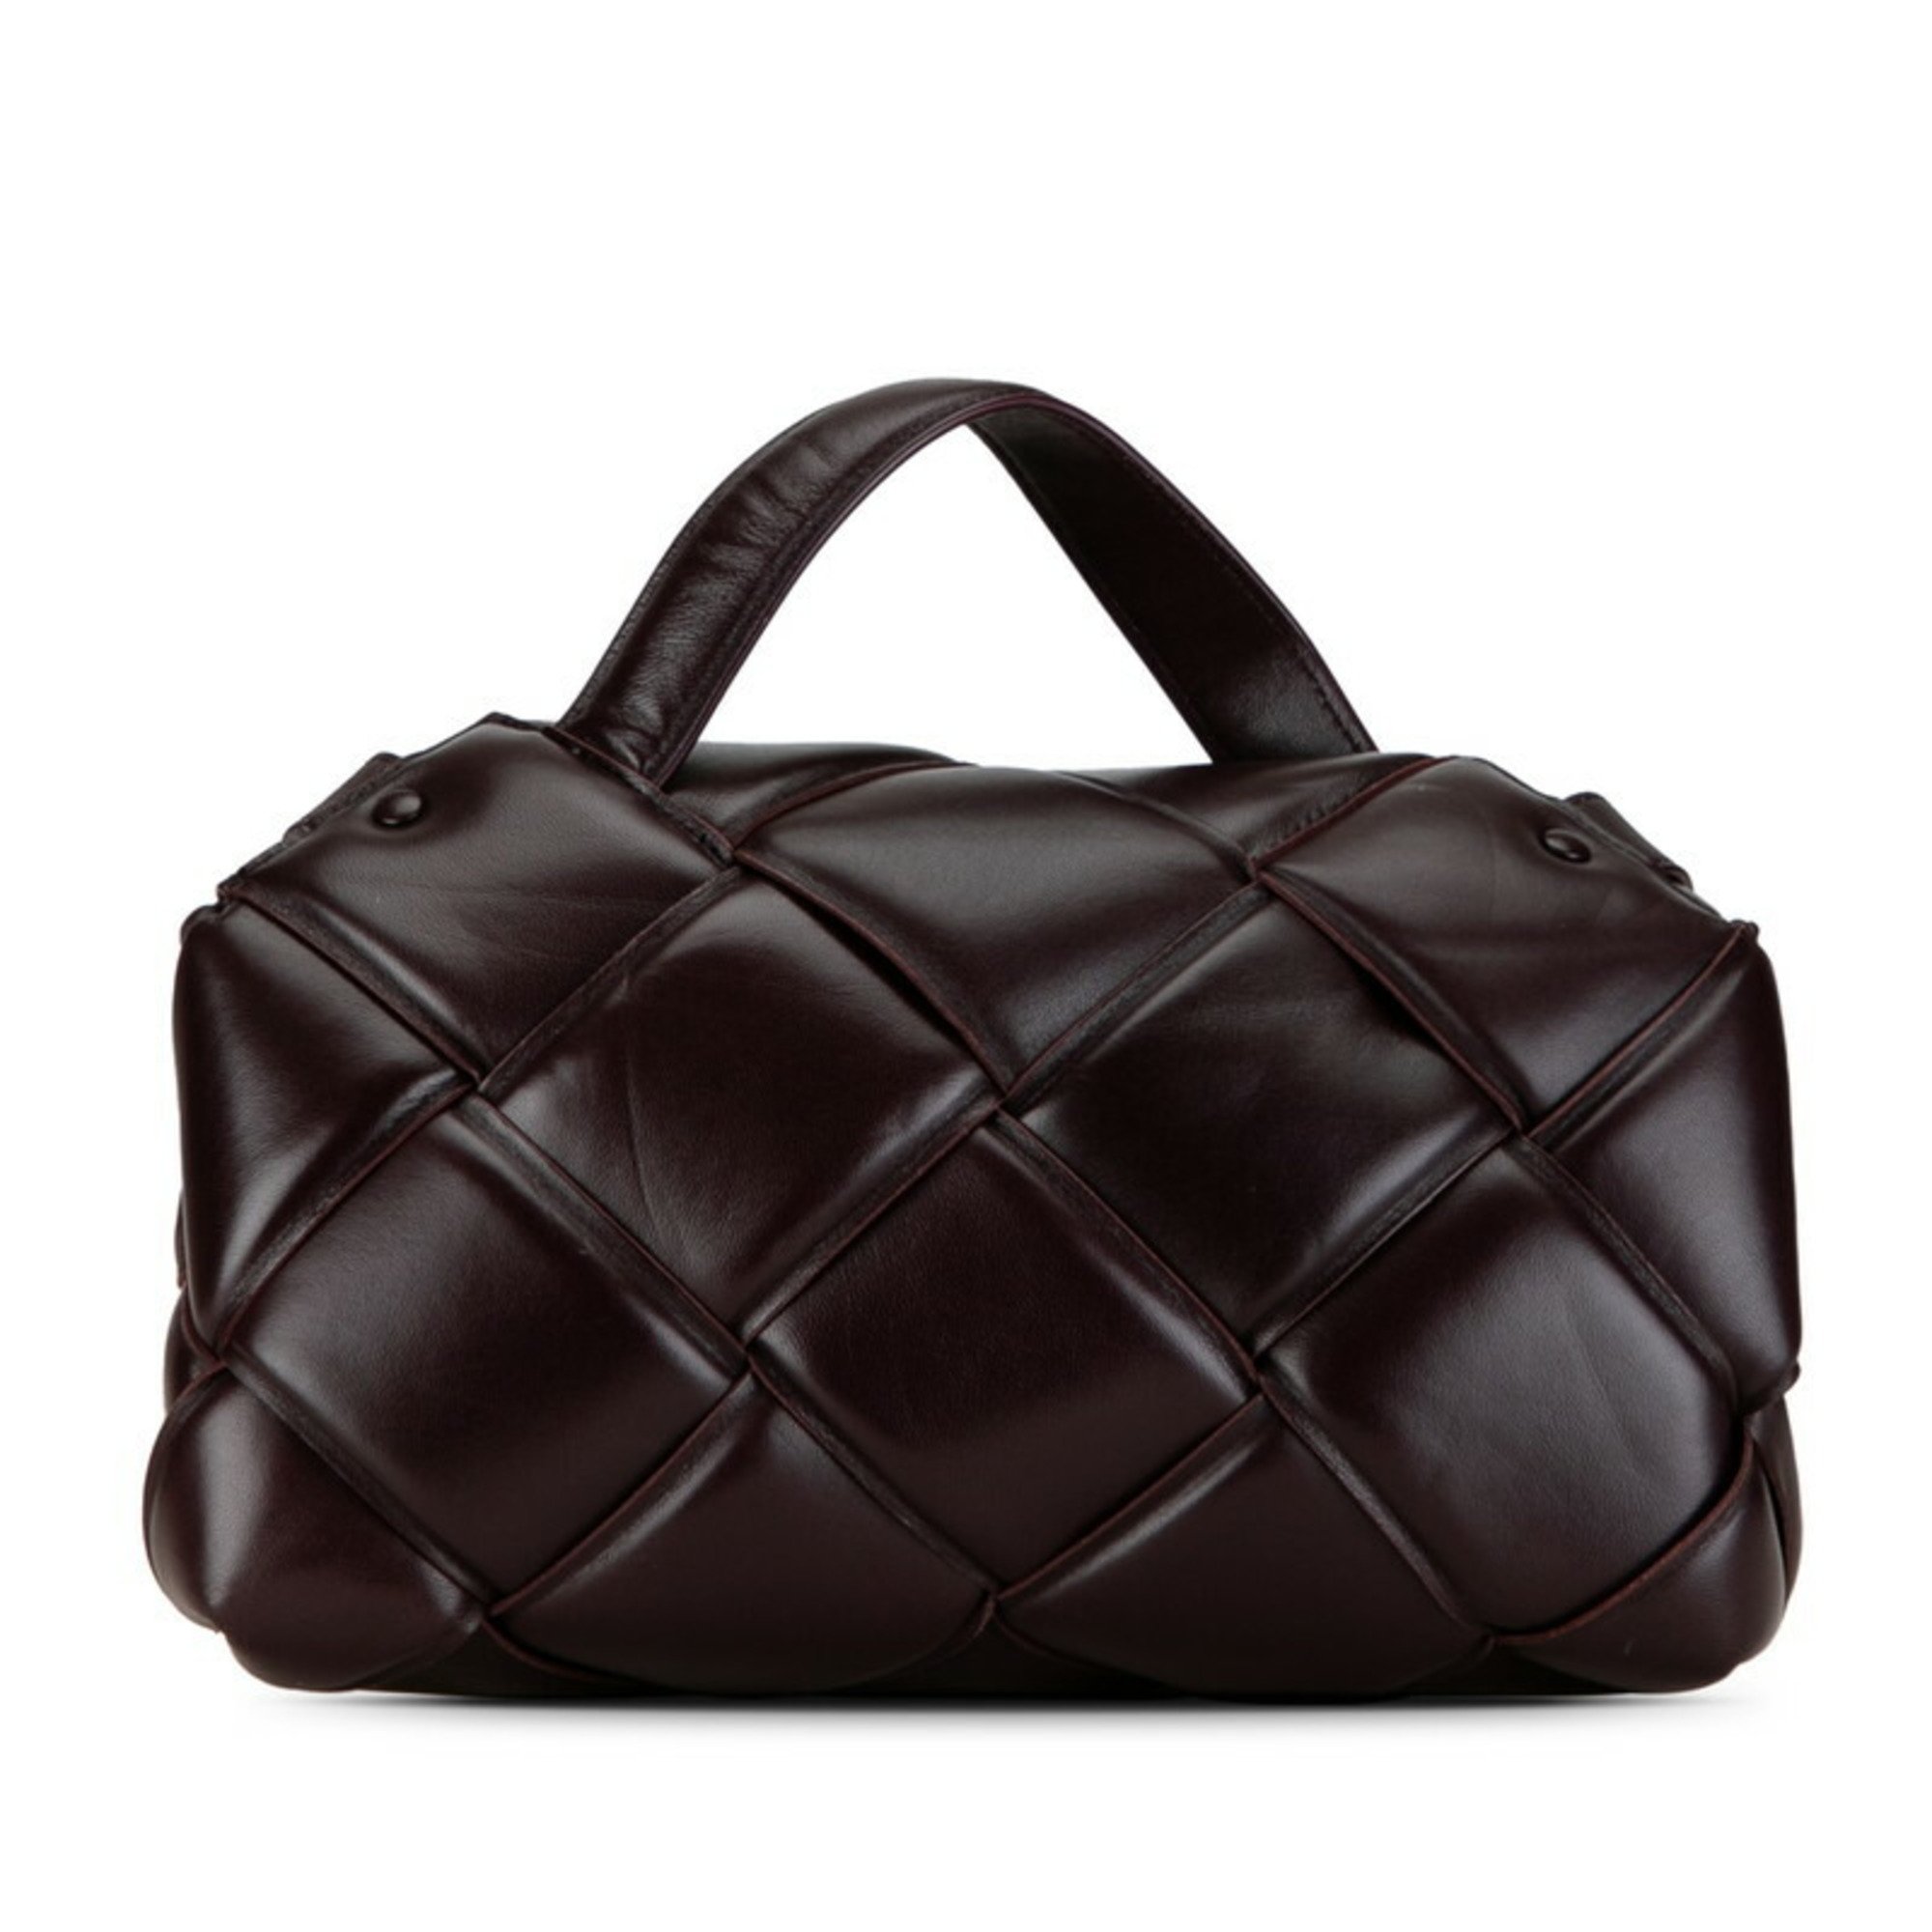 Bottega Veneta Maxi Intrecciato Shoulder Bag Brown Purple Leather Women's BOTTEGAVENETA